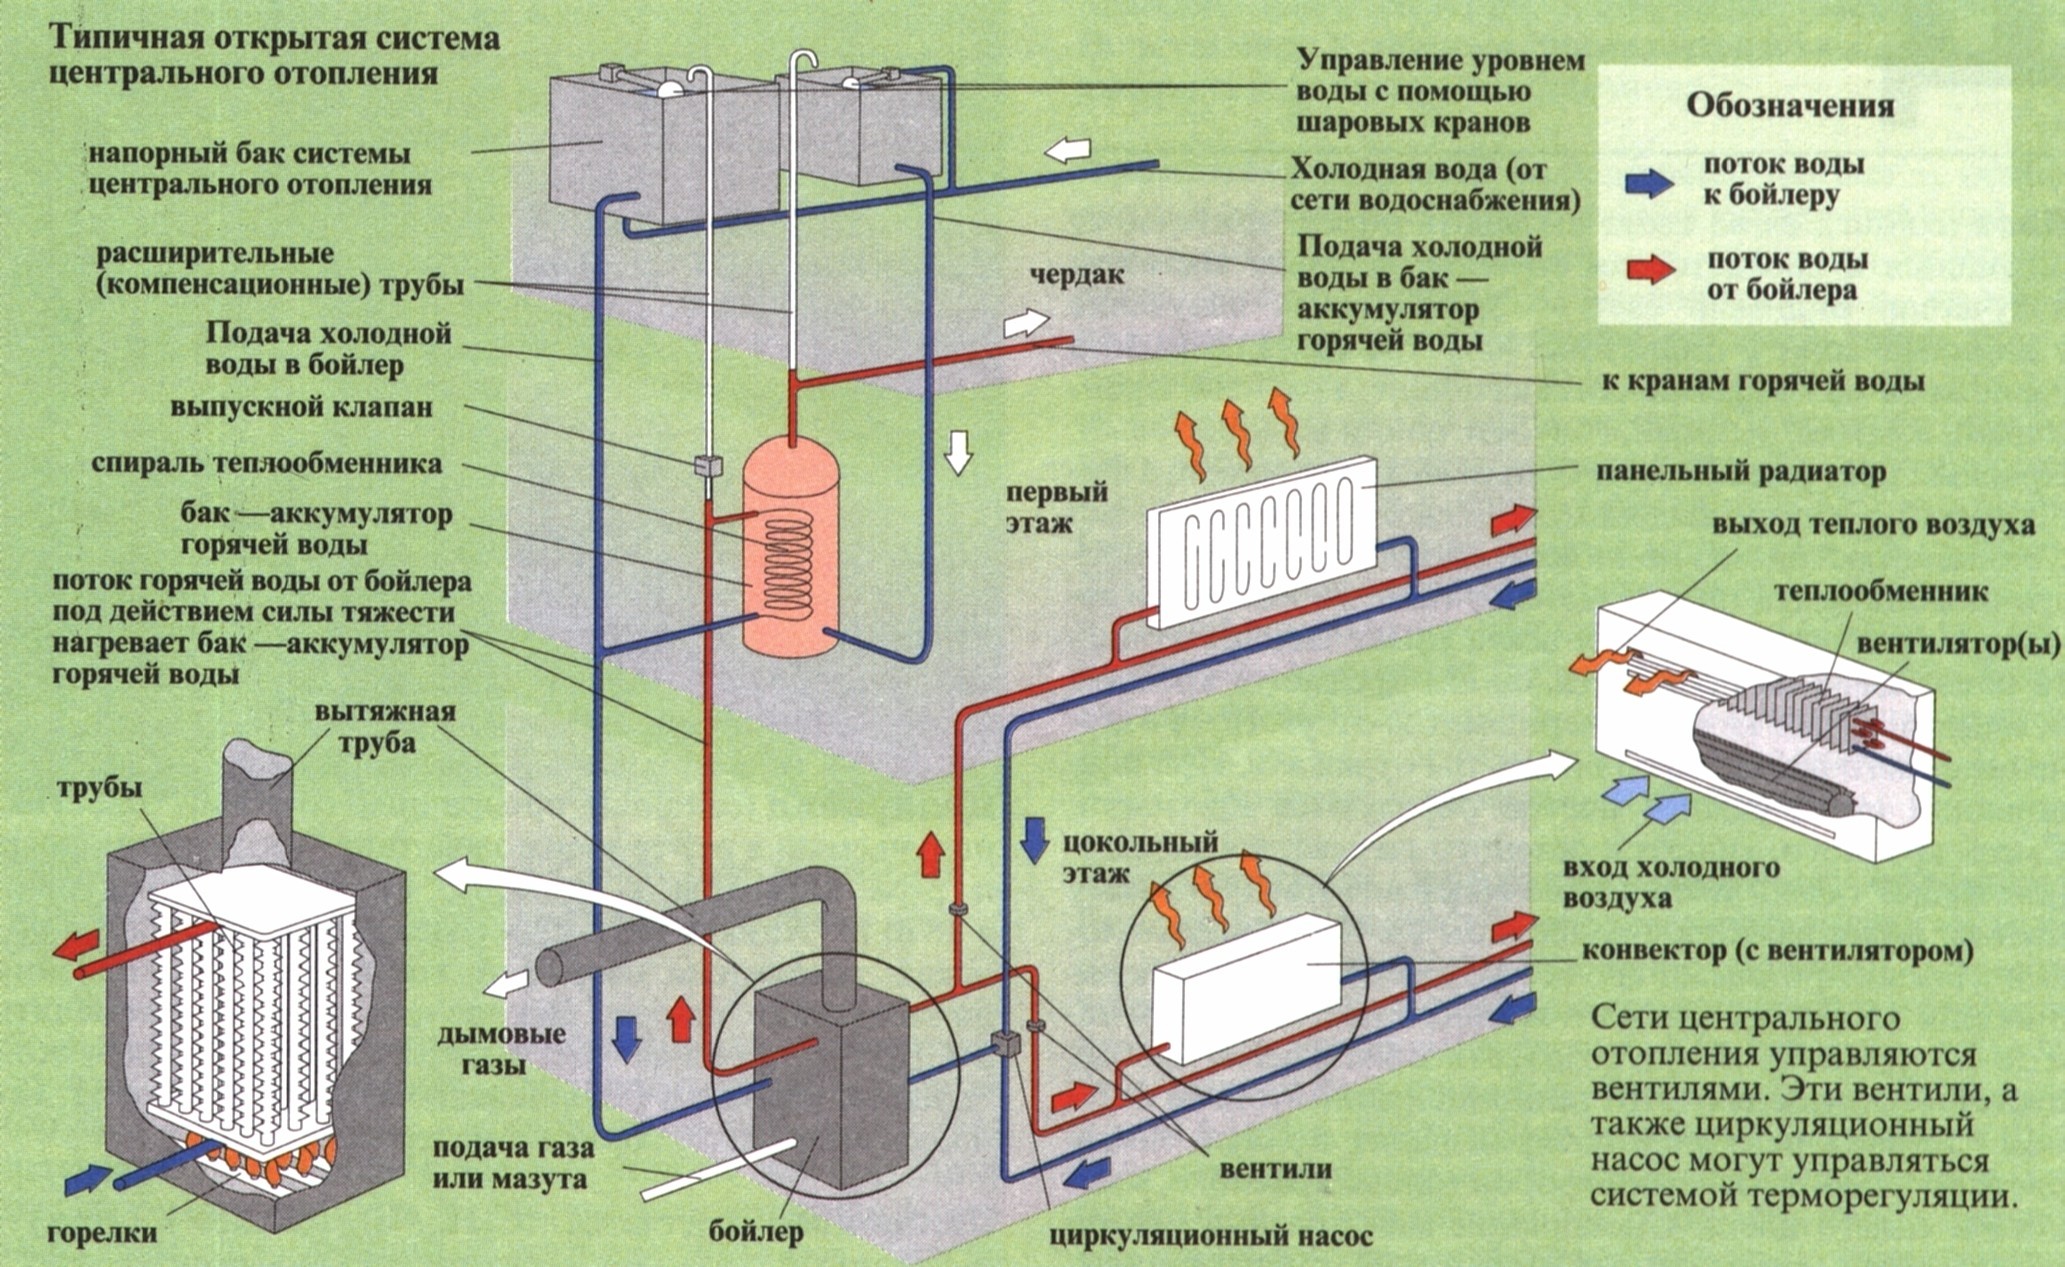 Отопление вода спб. Централизованная система отопления схема. Центральная система отопления схема. Централизованное отопление схема. Система парового отопление пар.